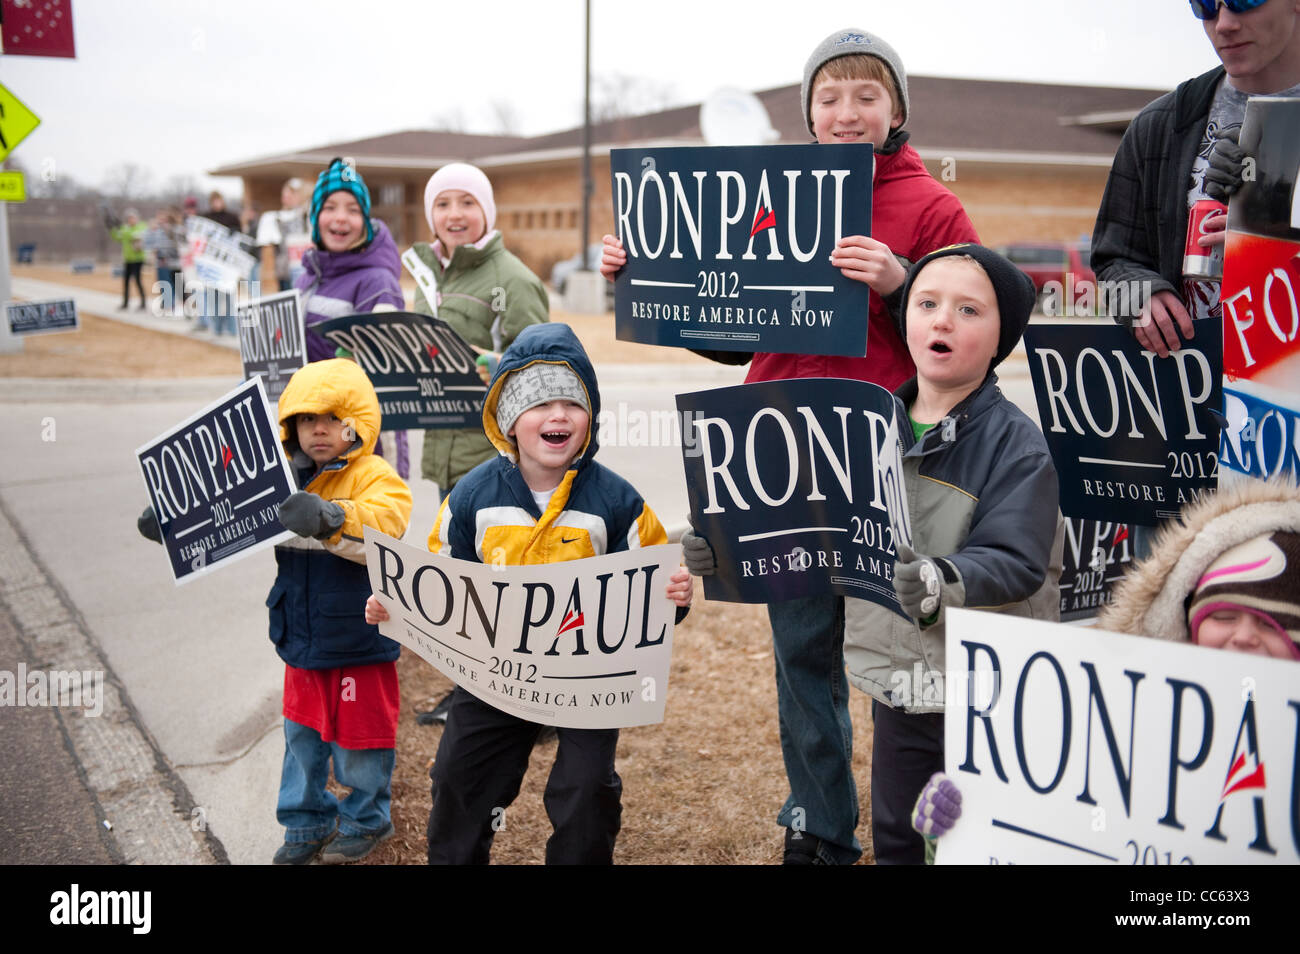 Republikanische Kandidat Präsidentschaftskandidaten Ron Paul Unterstützer Welle Zeichen außerhalb einer Kampagne Stop in Sioux Center, Iowa Stockfoto